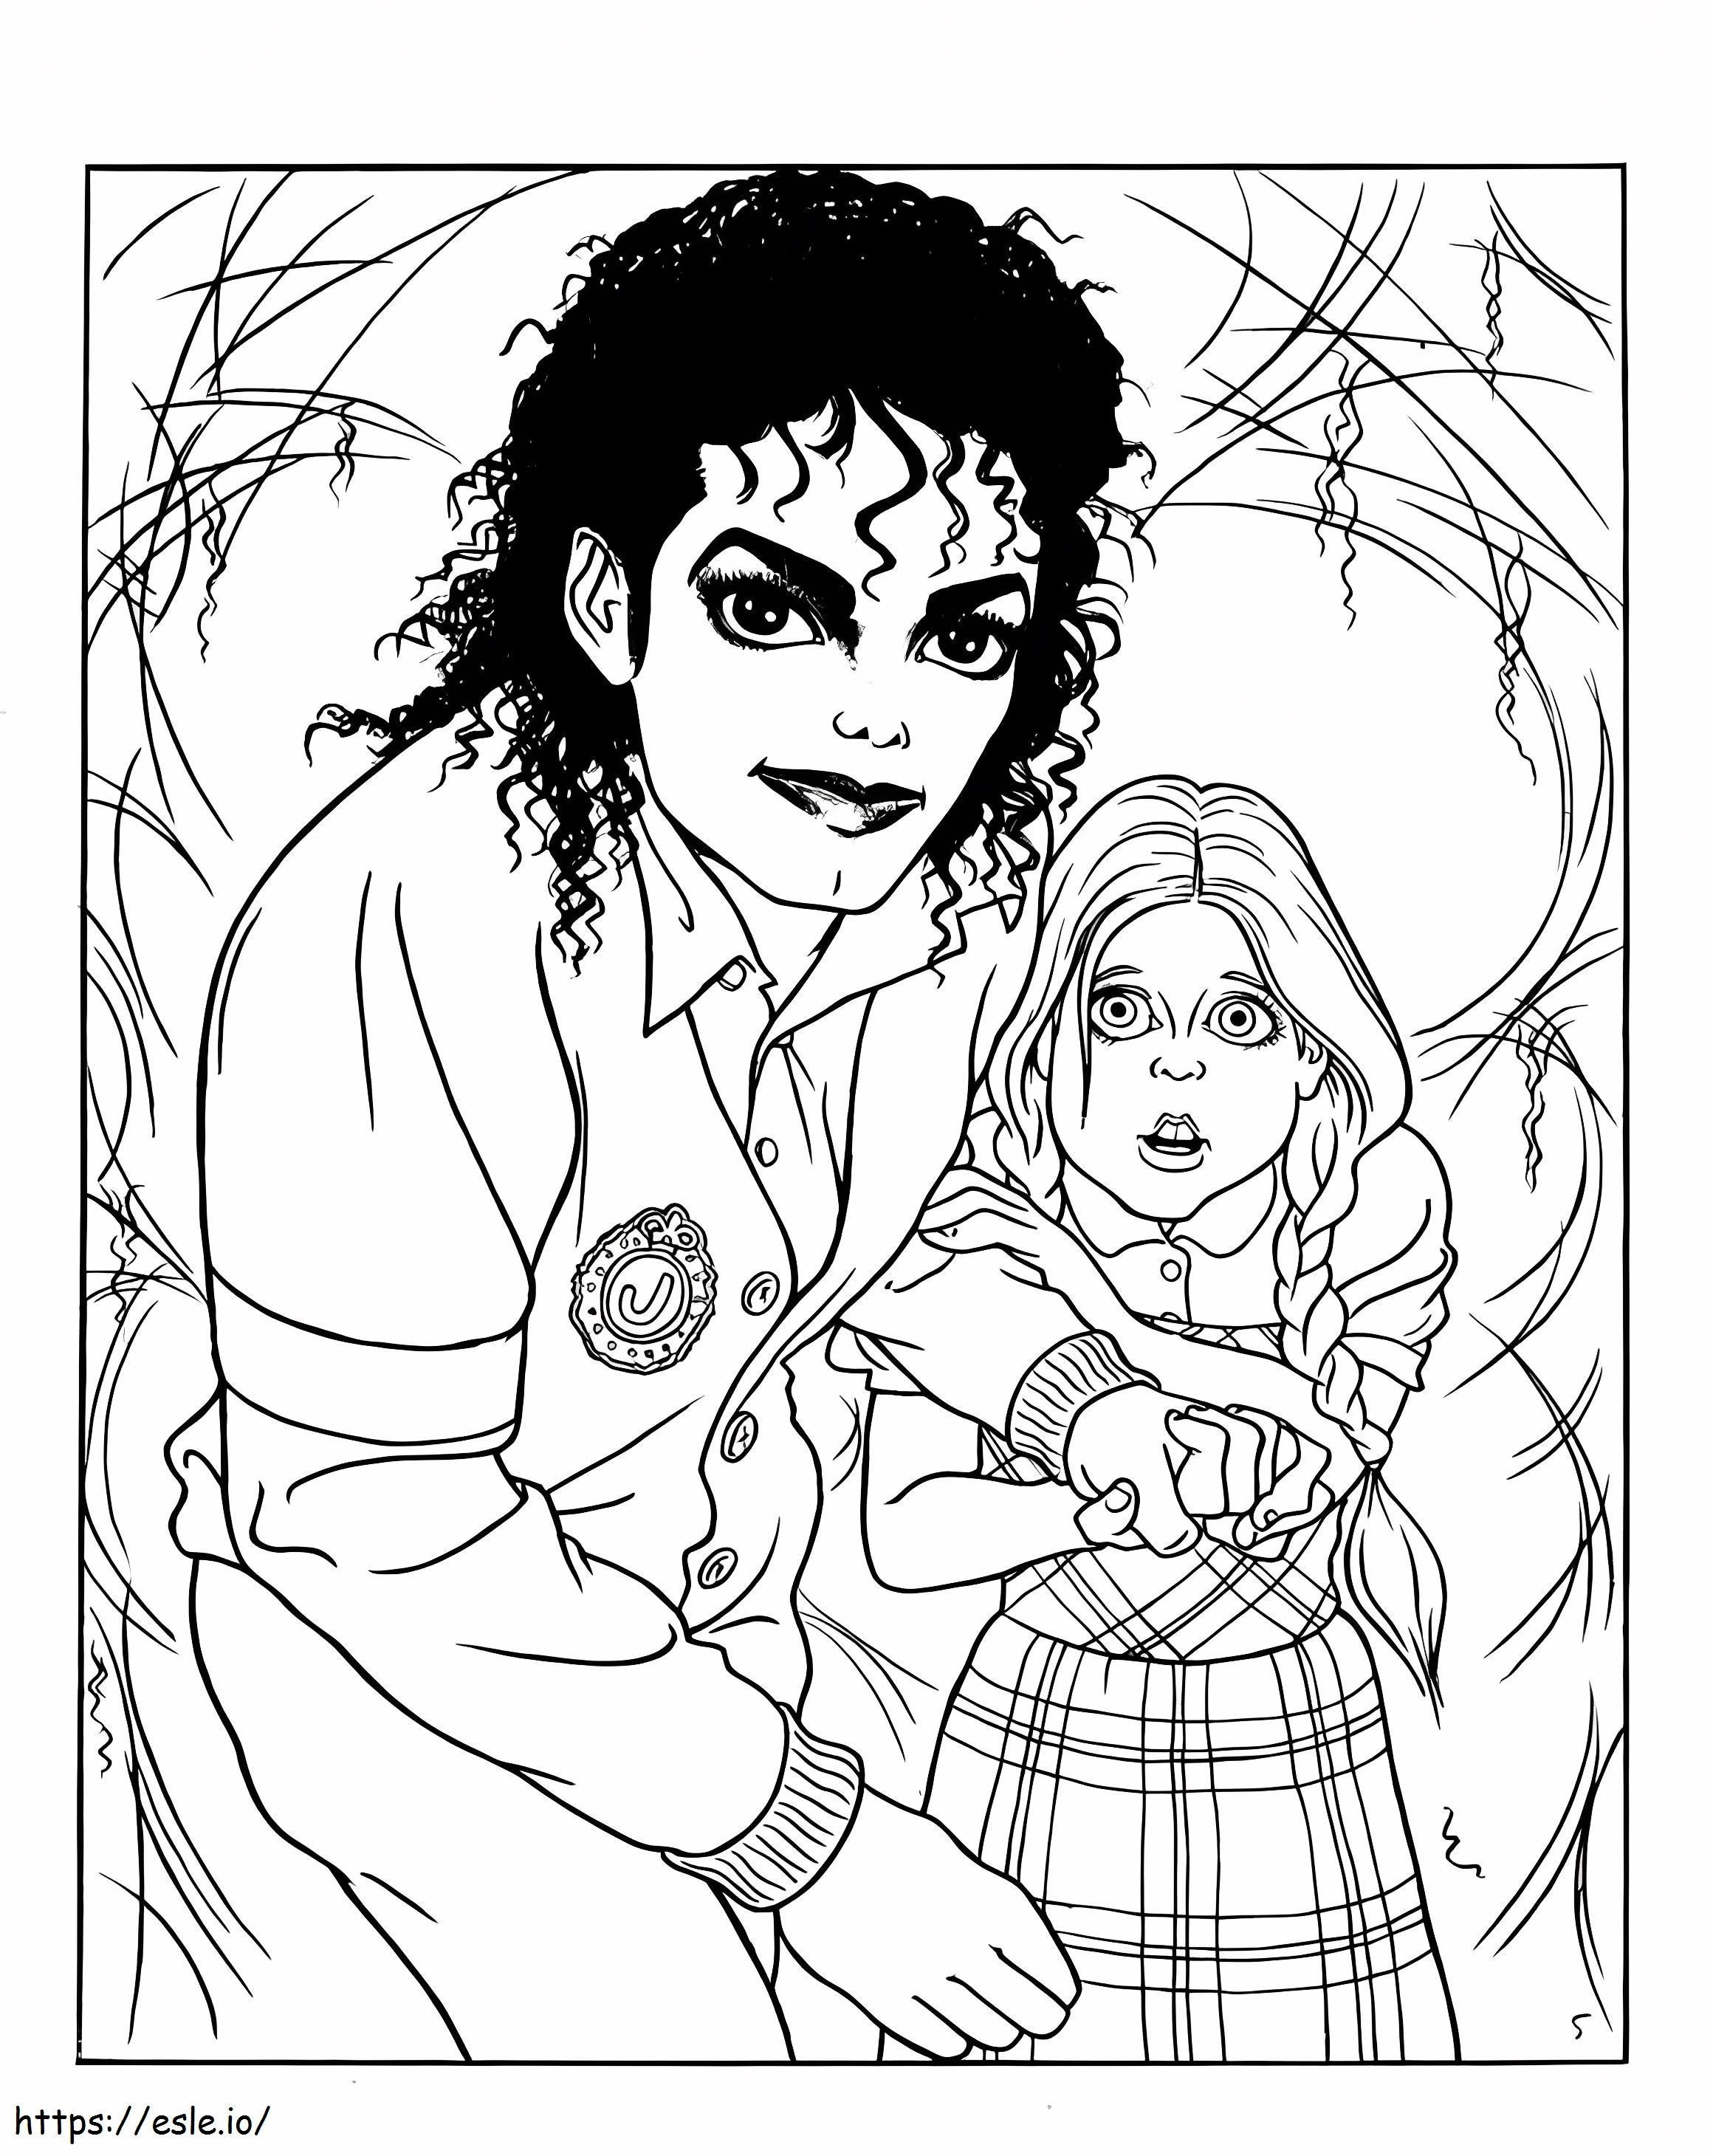 Michael Jackson e o garotinho para colorir